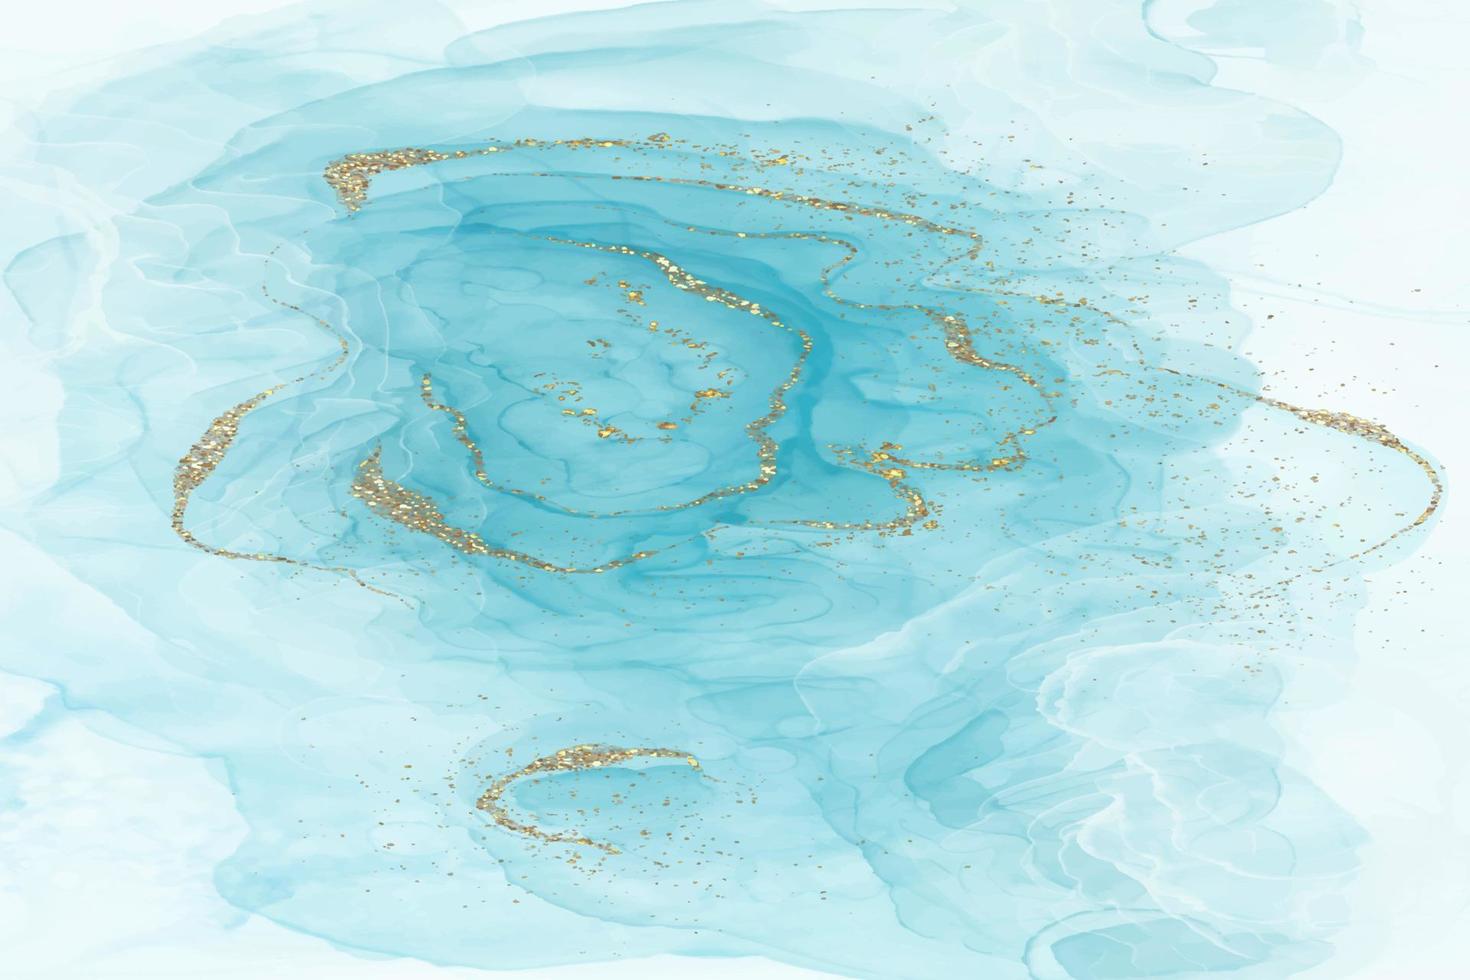 sfondo acquerello liquido blu con macchie dorate. effetto disegno con inchiostro alcolico in marmo turchese verde acqua. modello di progettazione illustrazione vettoriale per invito a nozze, menu, rsvp.